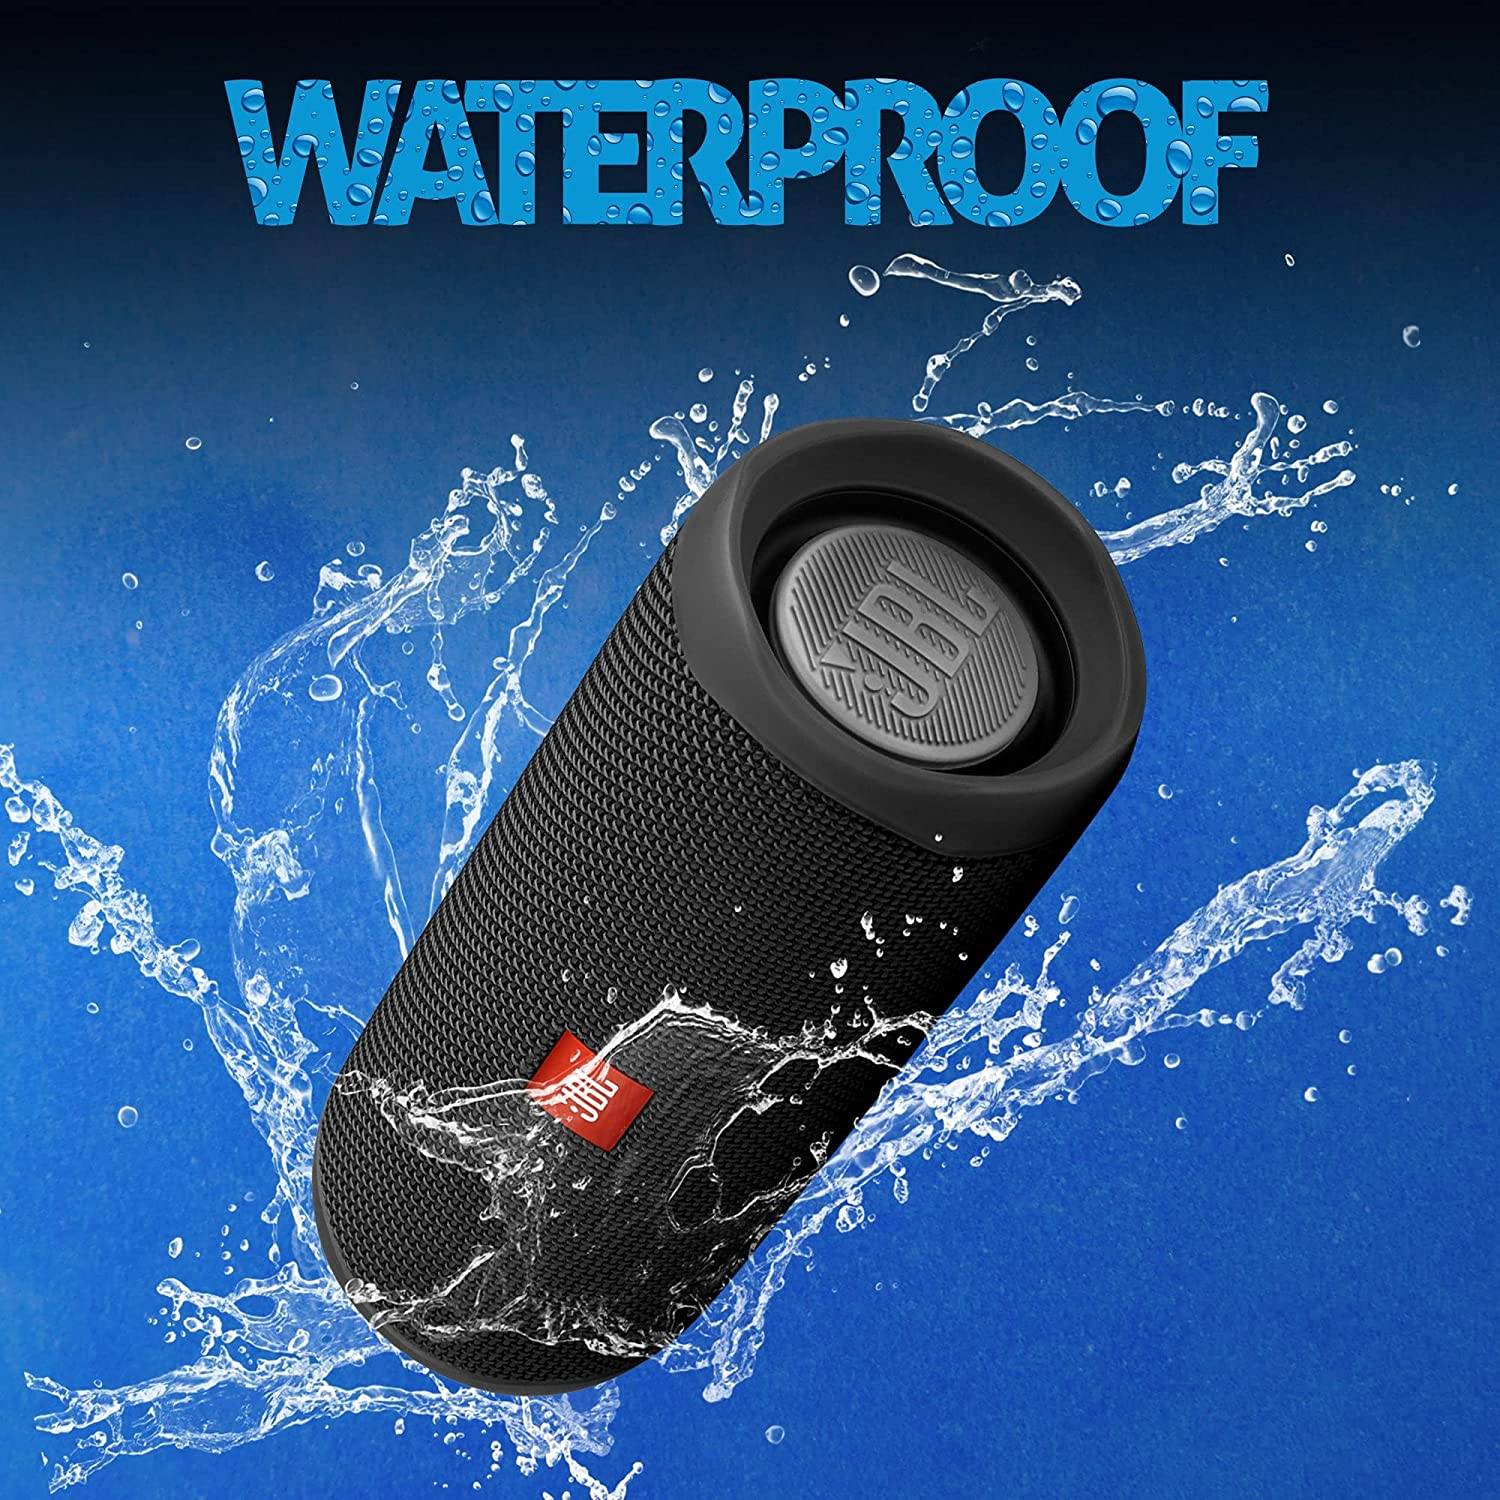 waterproof rated